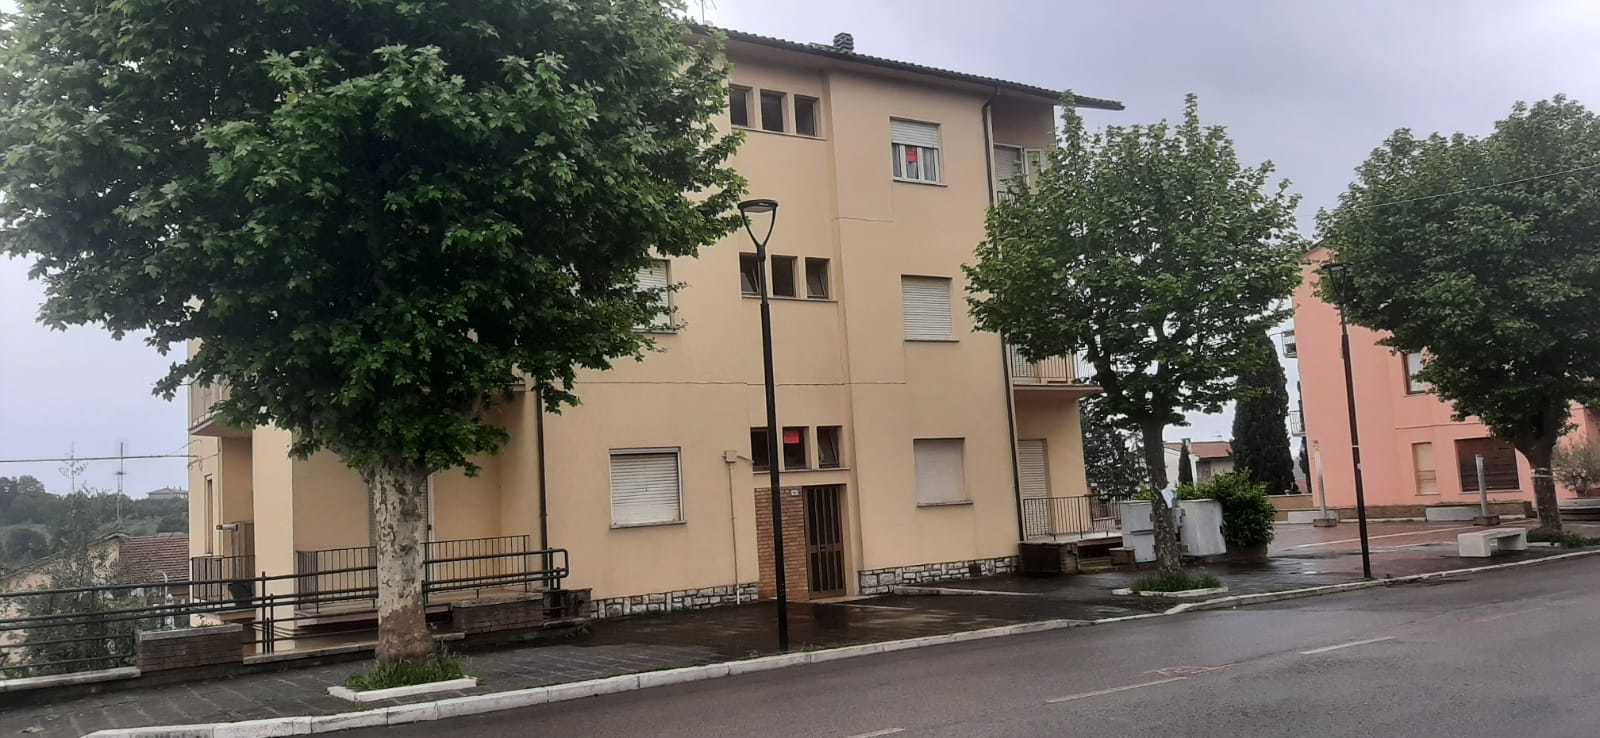 Quadrilocale con terrazzi in via roma, Montecastrilli